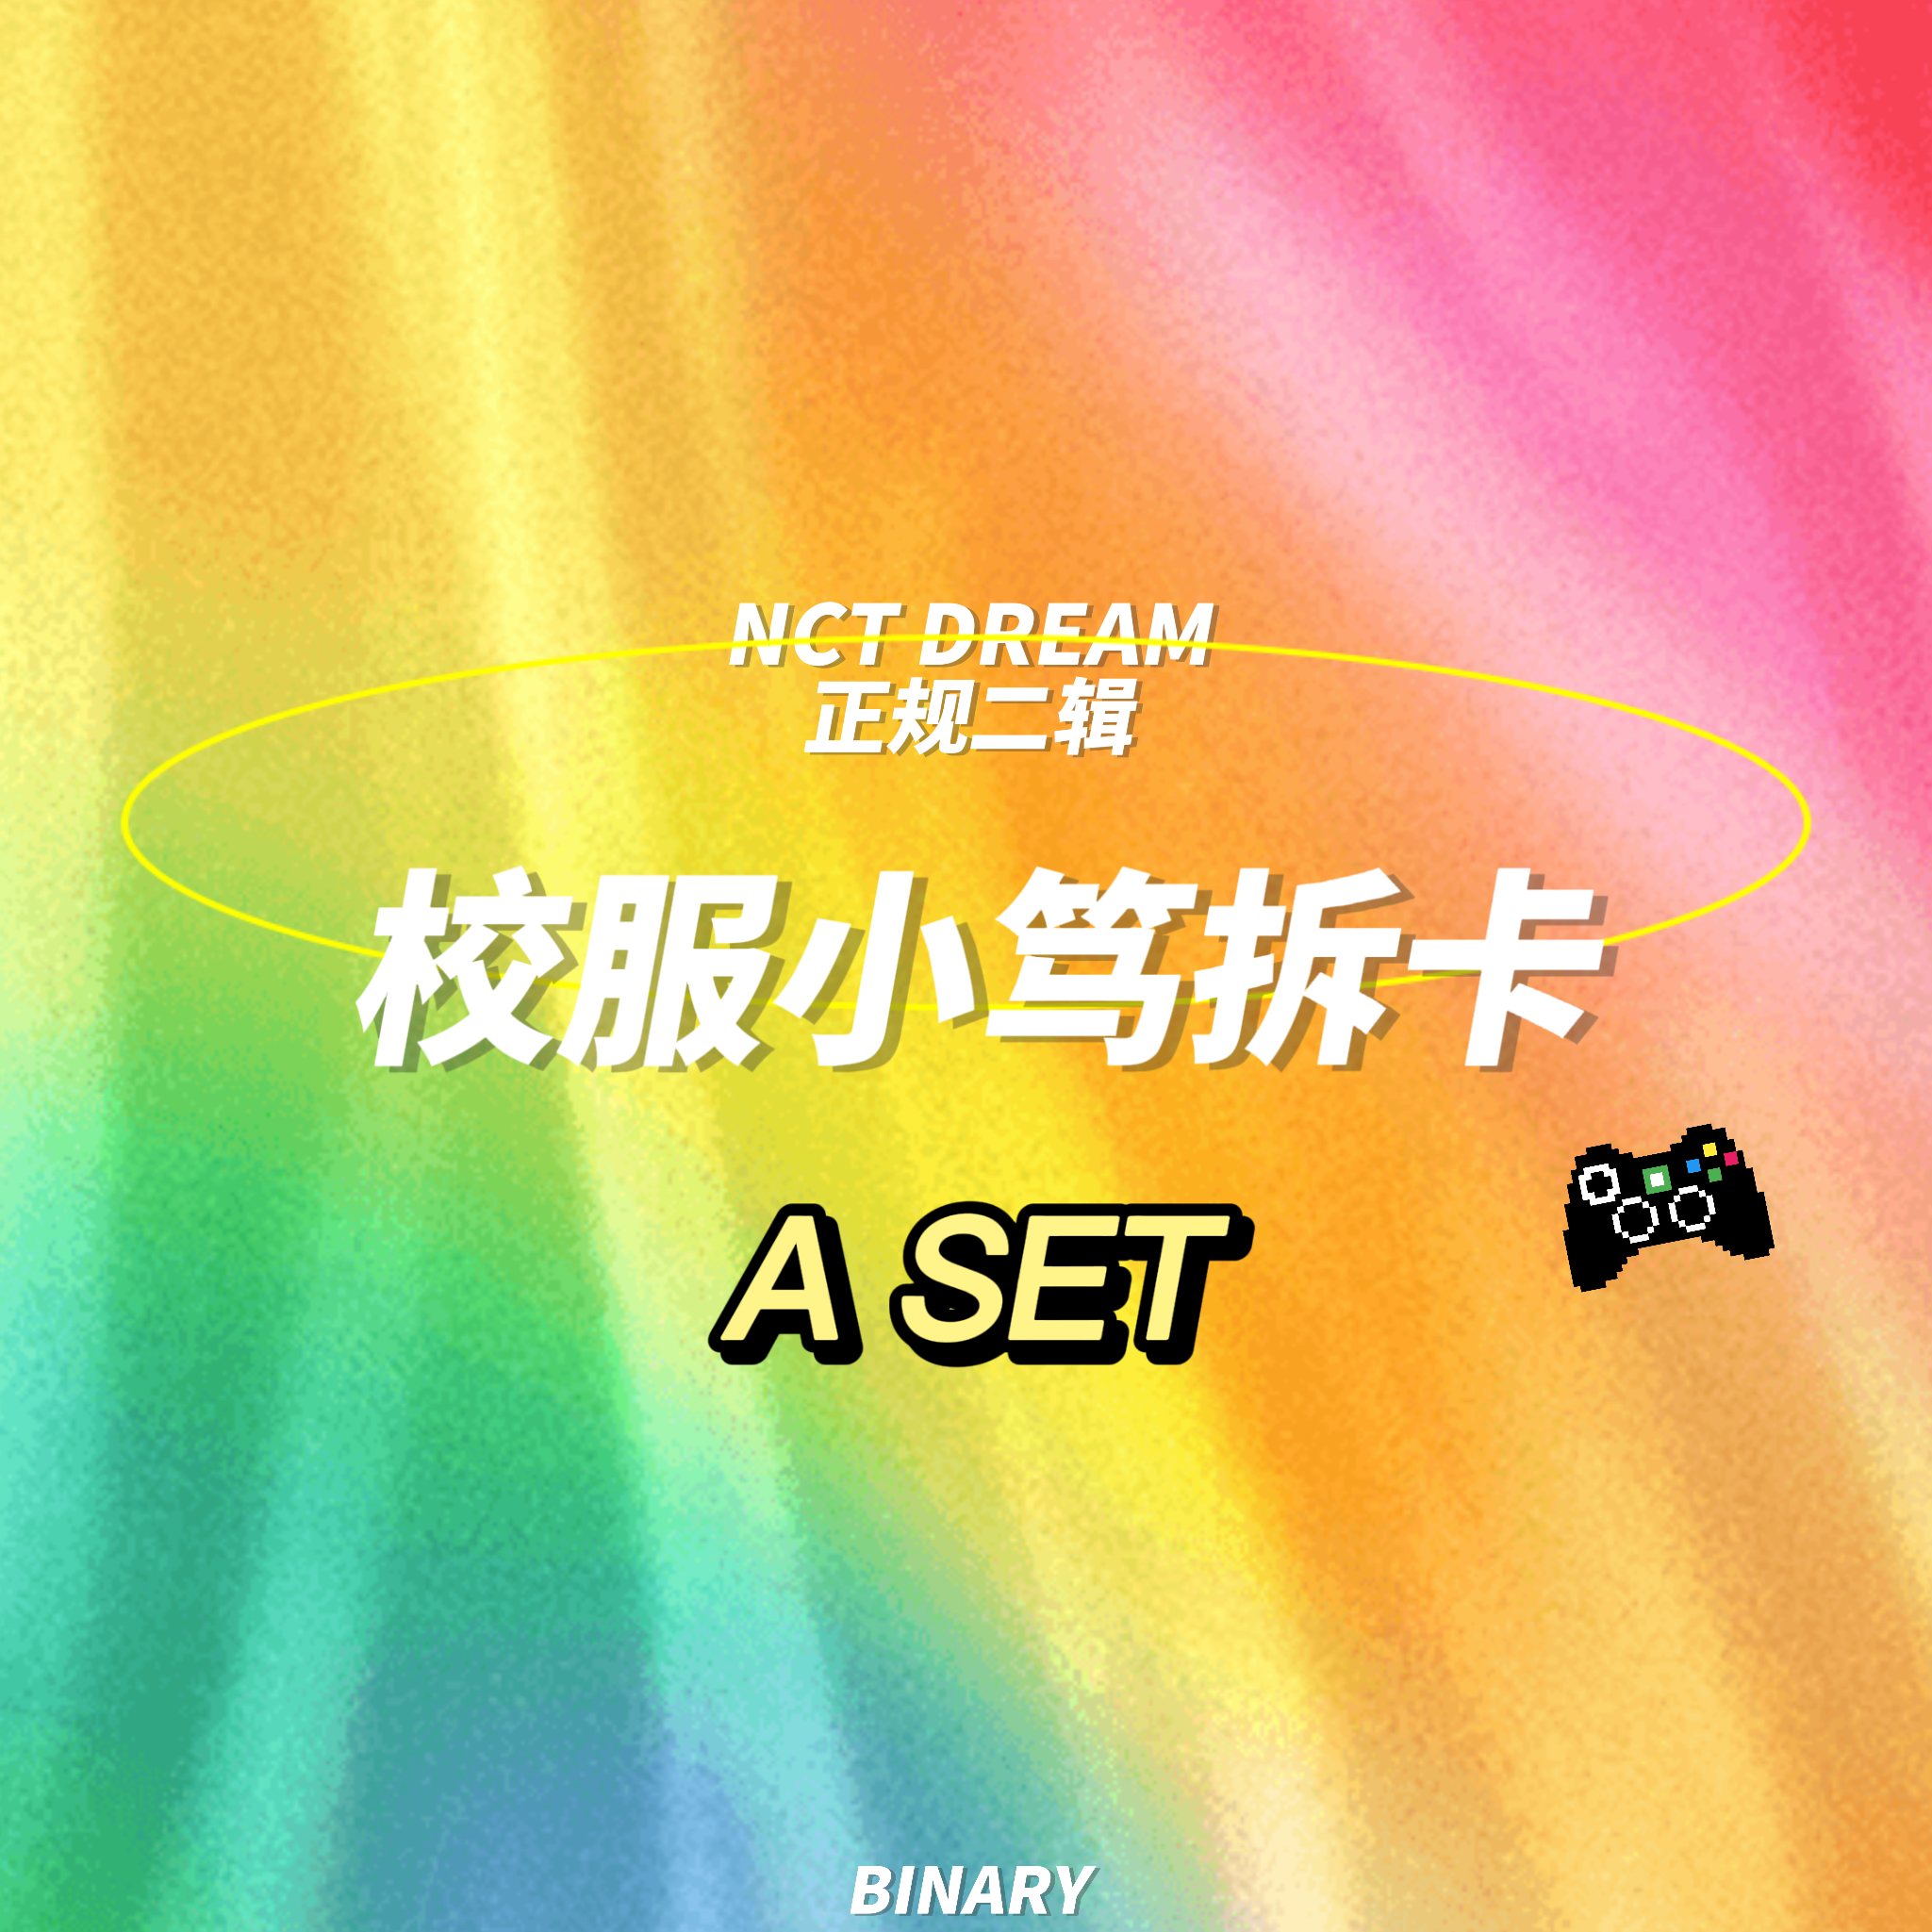 [拆卡专 校服小笃特典Aset] NCT DREAM - 正规2辑 [Glitch Mode] (写真集版本)_Binary_诺民博物志